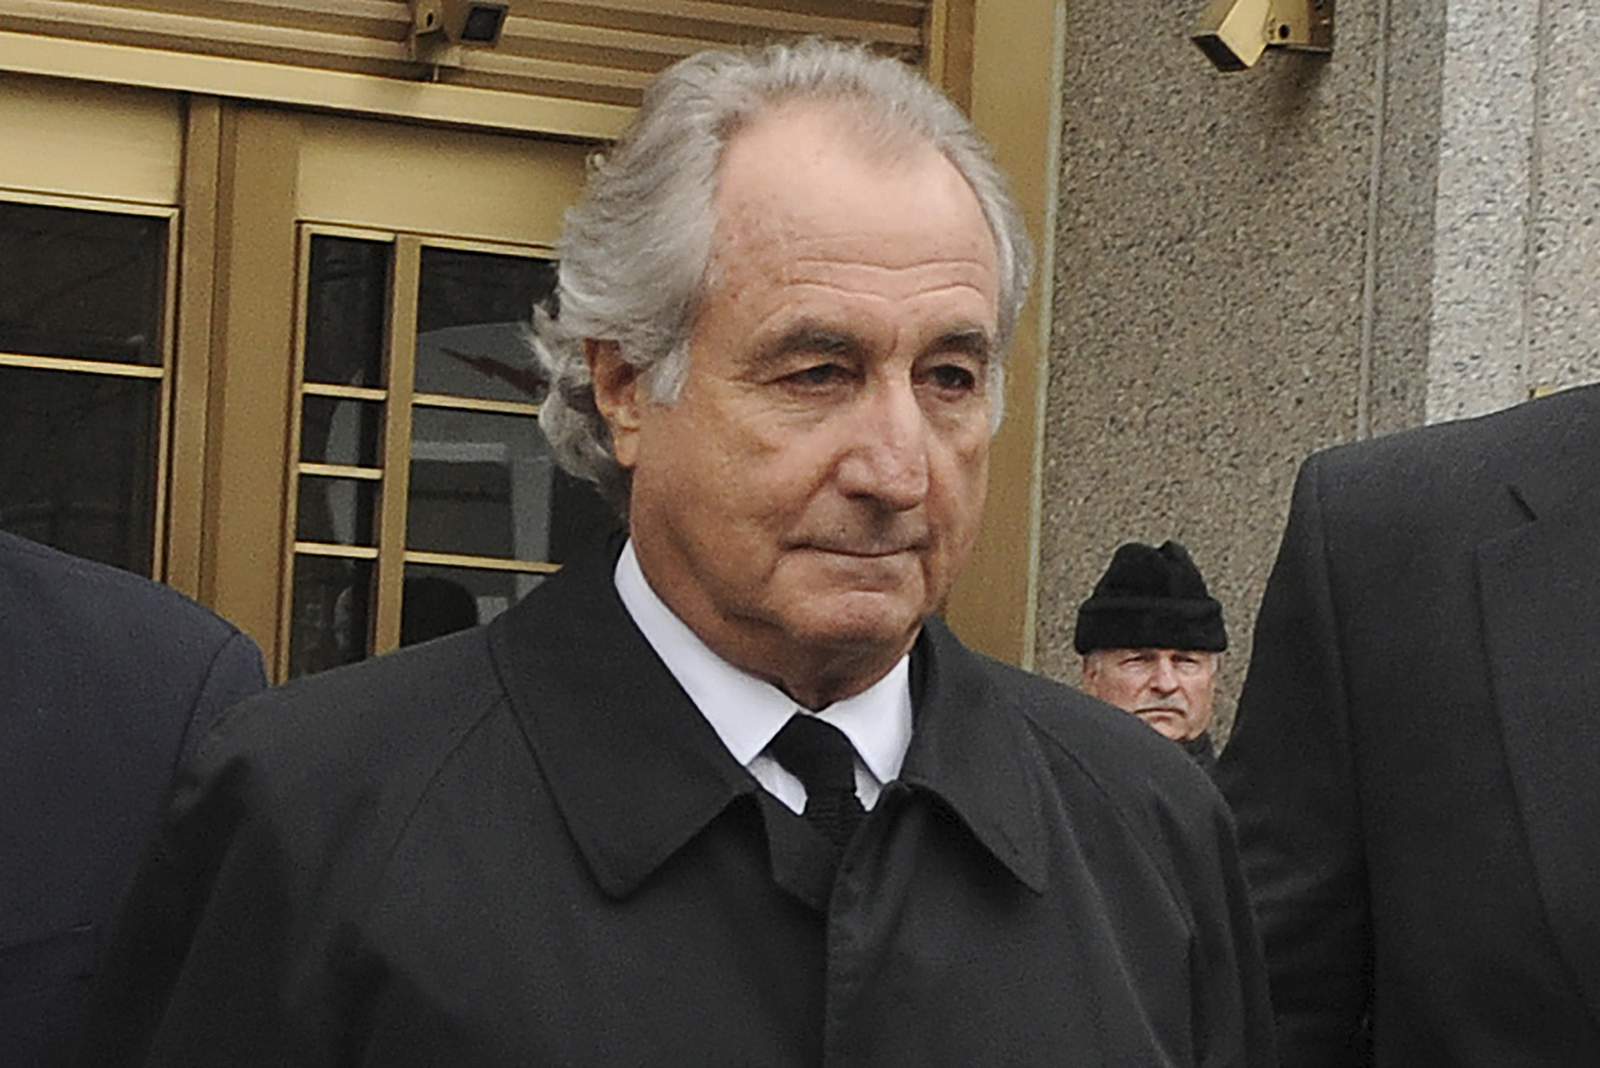 Ponzi schemer Bernie Madoff dies in federal prison